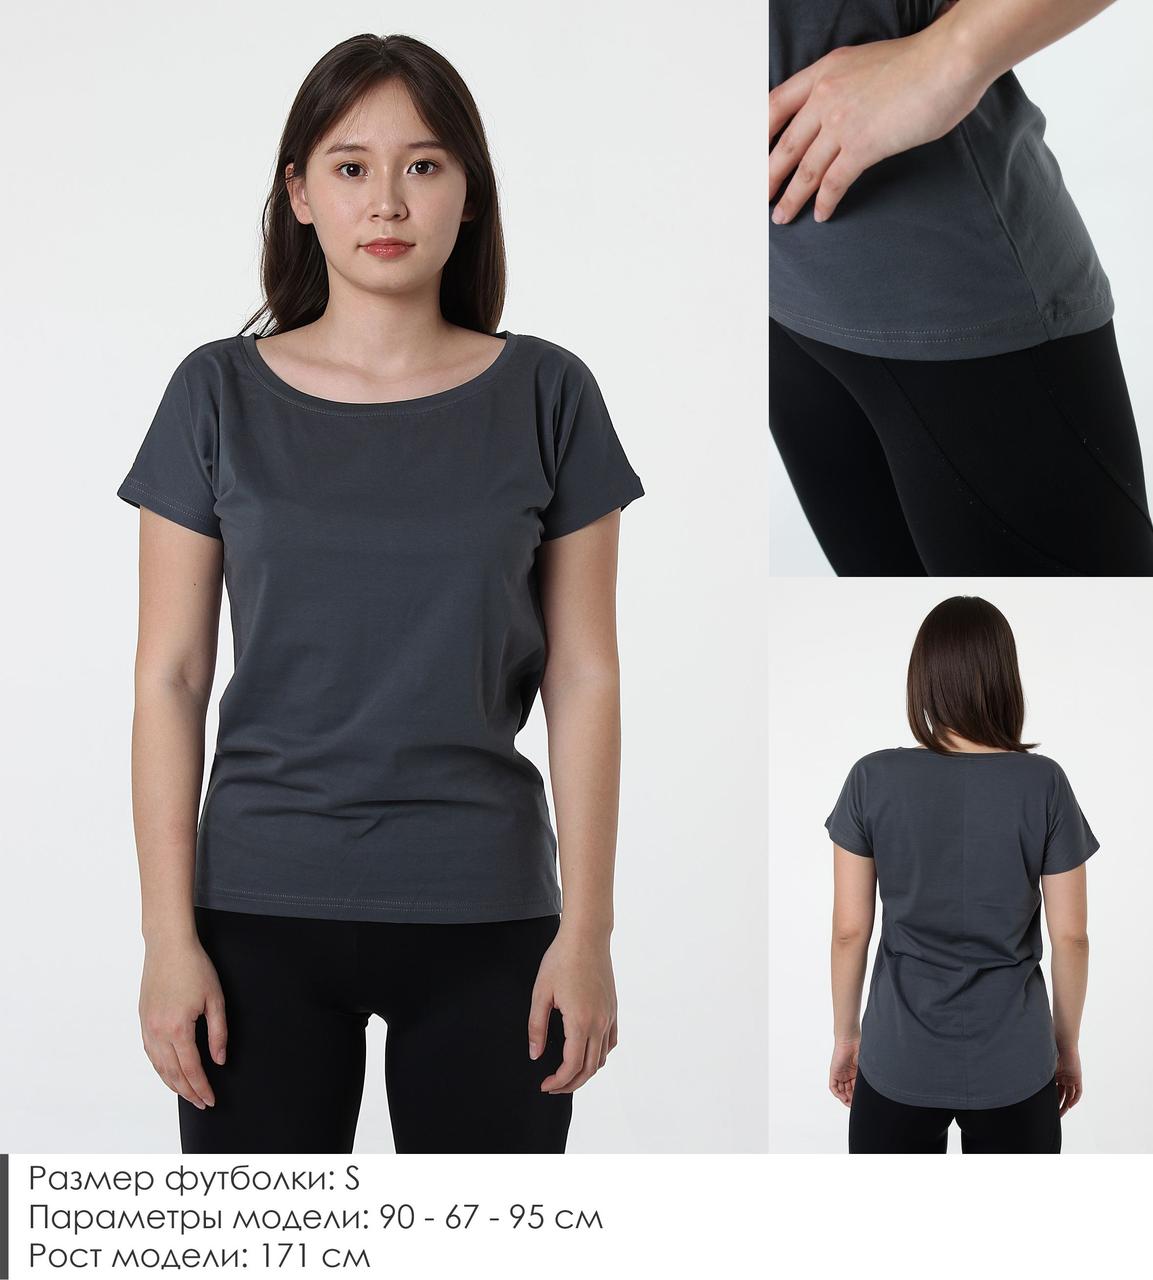 Удлиненная женская футболка из хлопка. Цвет: Серый графитовый